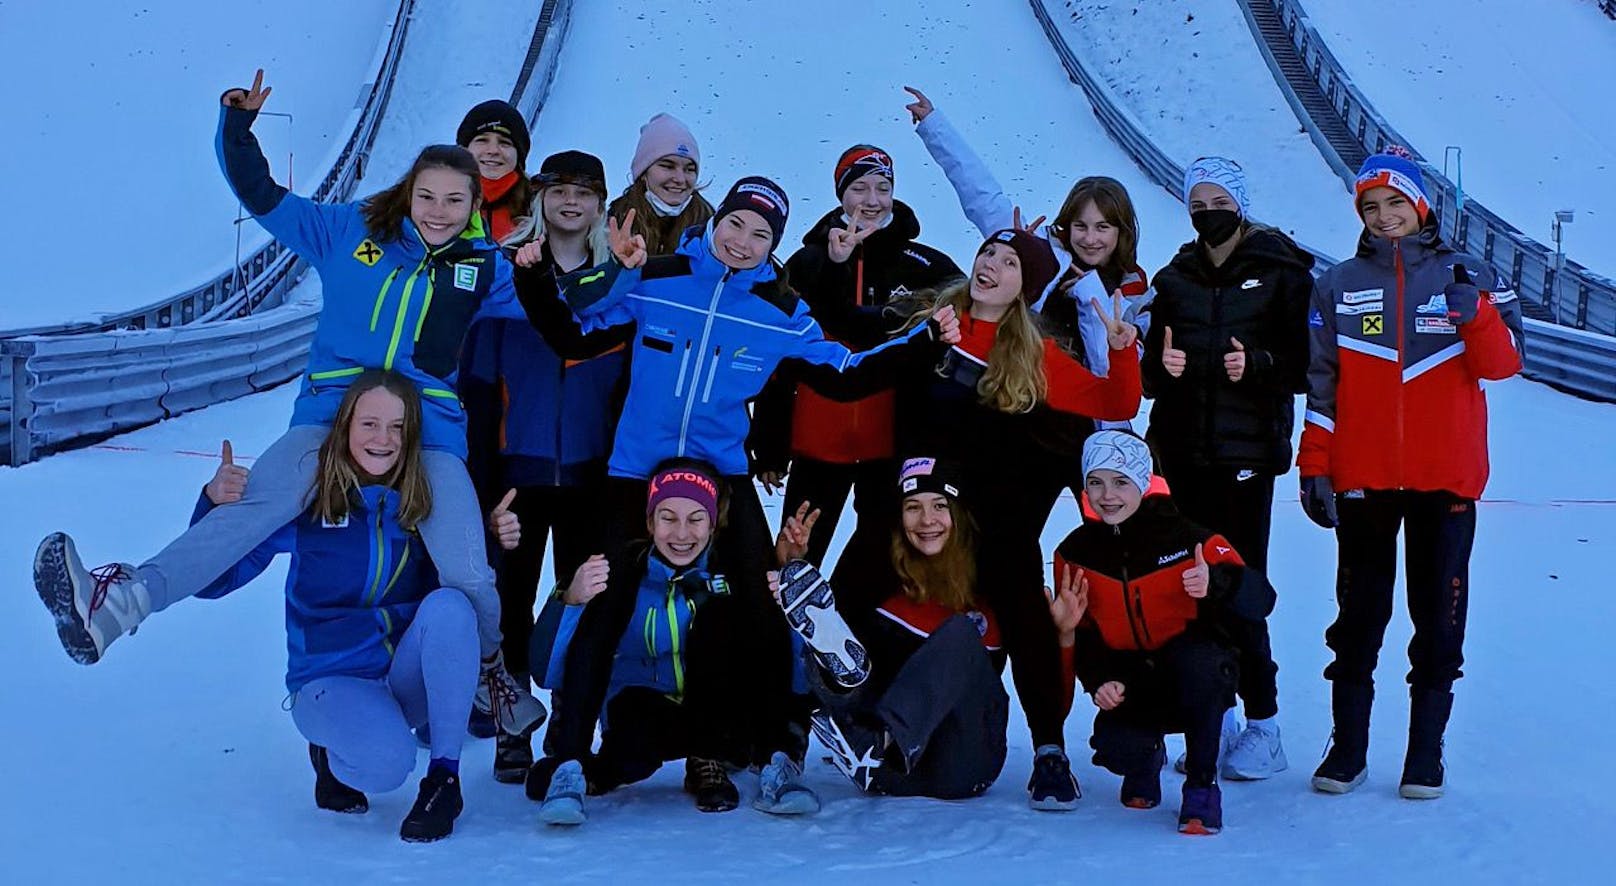 Wiens Skisprung-Nachwuchs in Feierstimmung: Das Team freut sich über die Erfolge.